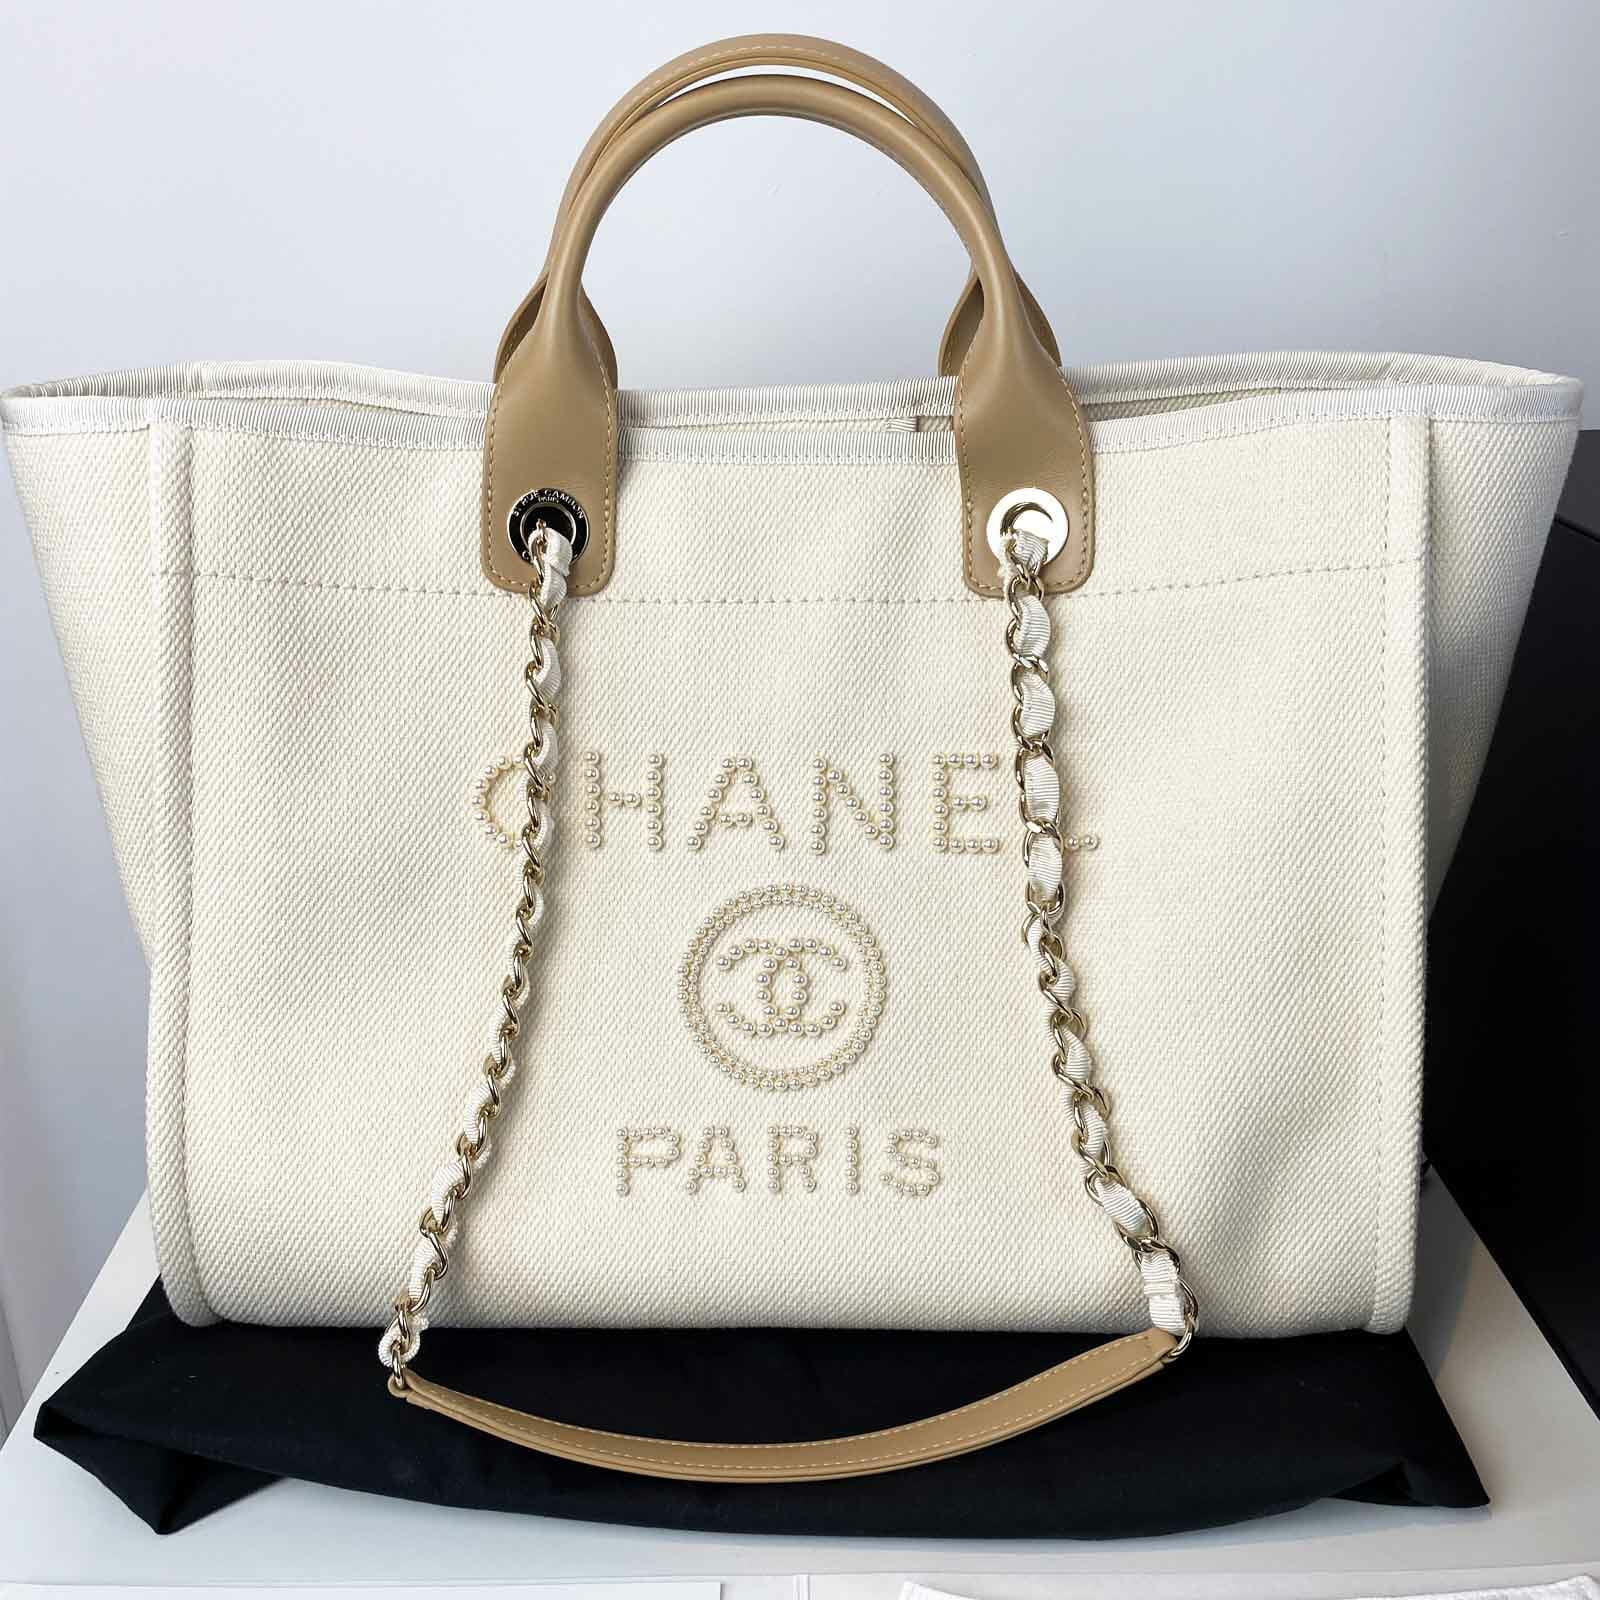 Chanel Canvas Tote Handbags